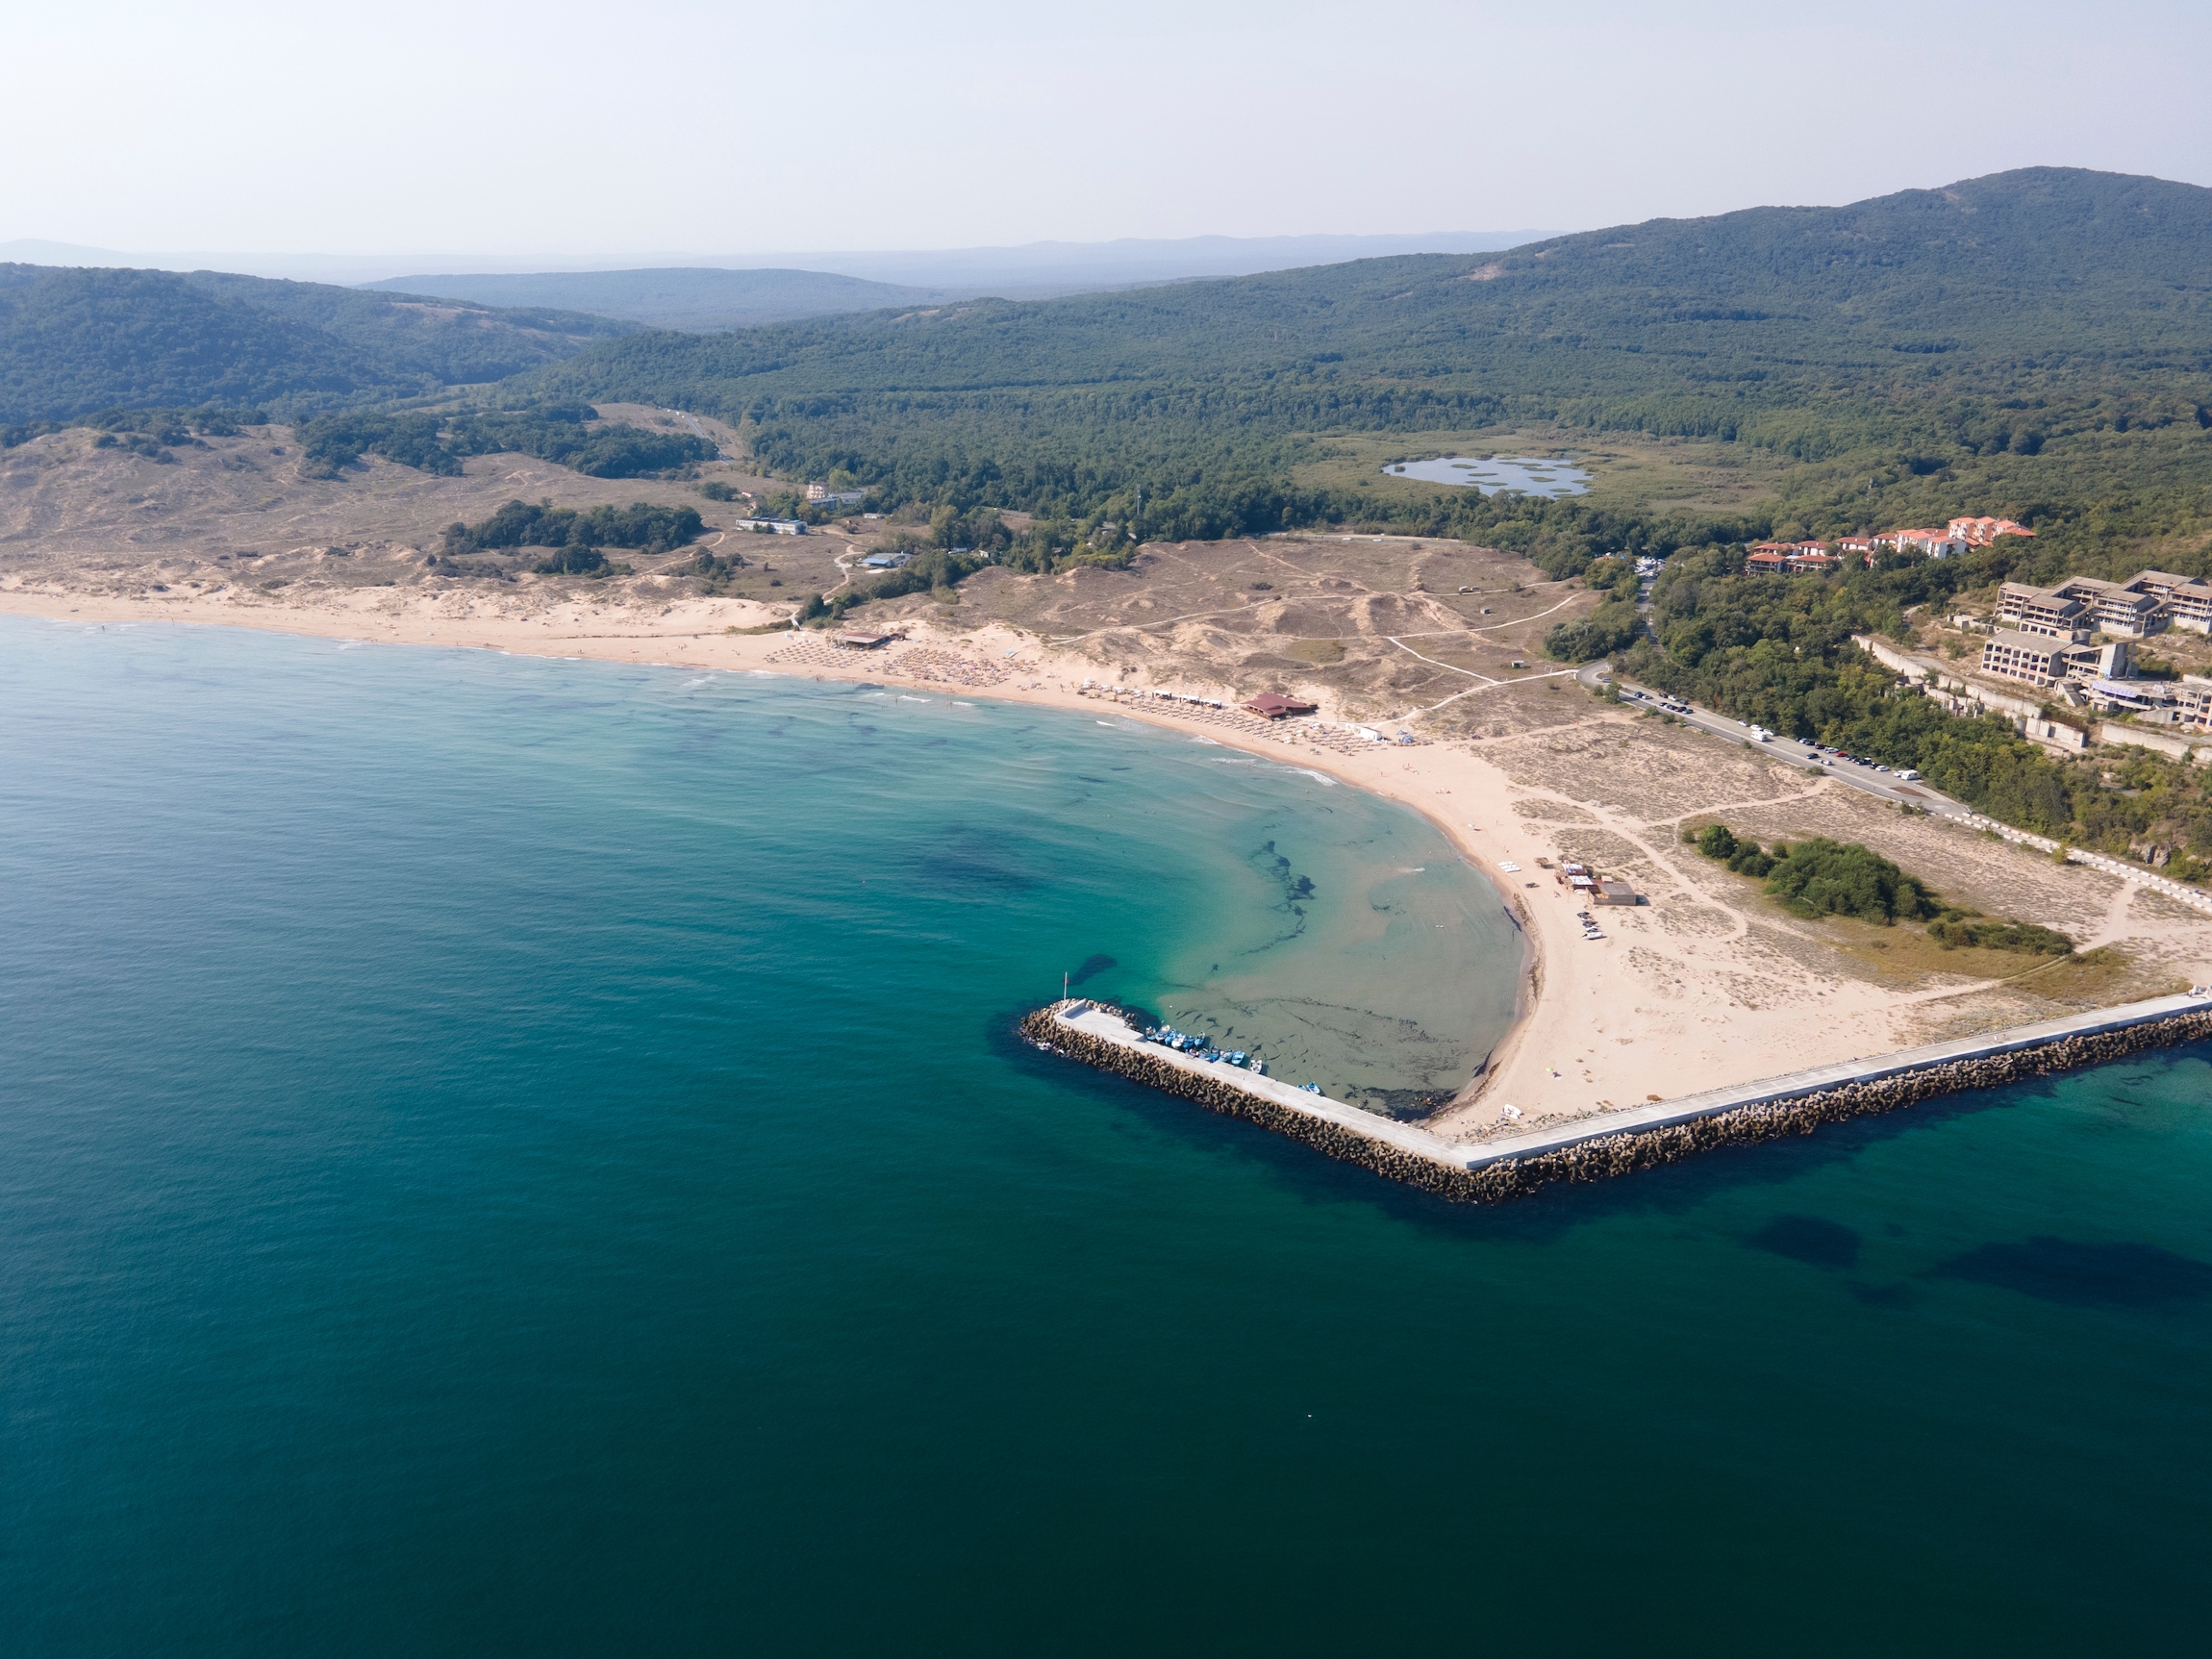 Niesamowity widok z powietrza na plażę Arkutino, Region Burgas, Bułgaria